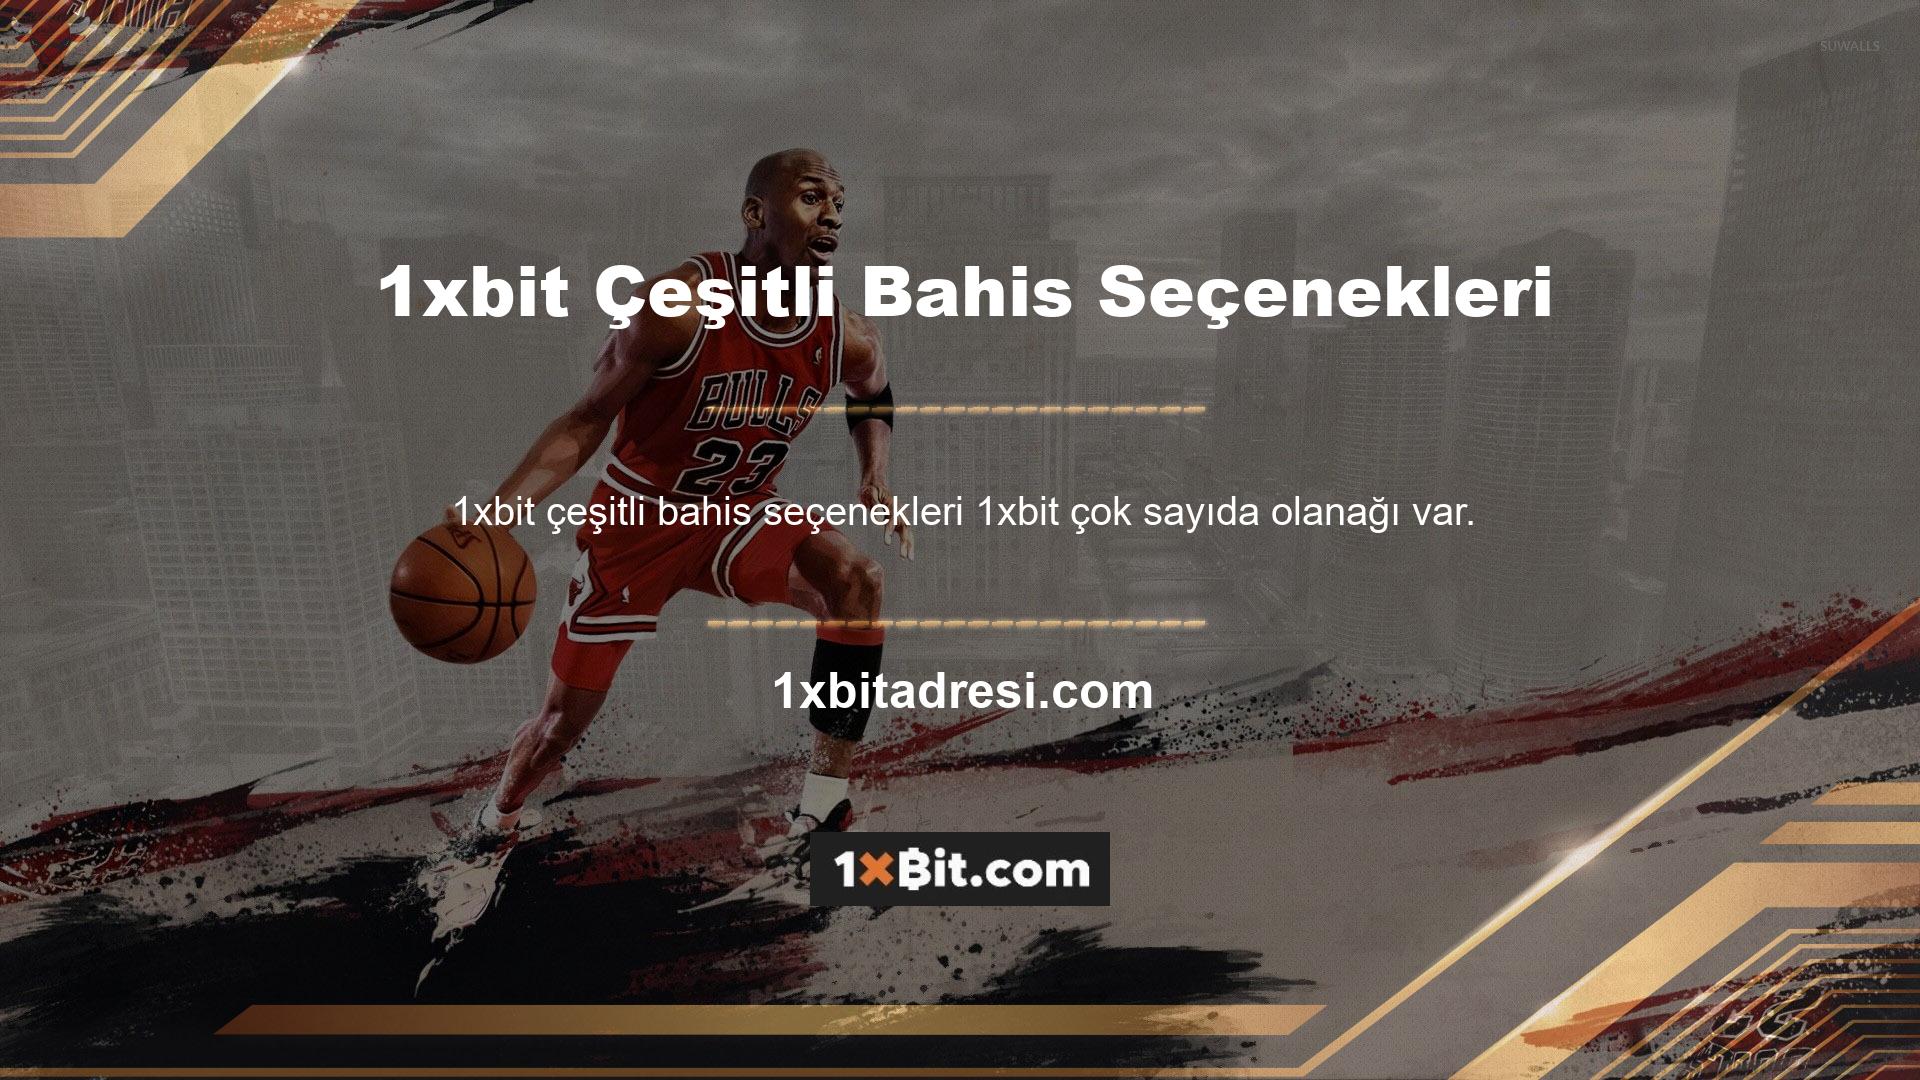 Türk oyun sektörüne anında erişim sağlayan ve tüm kayıtlı üyelerine geniş bir oyun yelpazesi sunan uluslararası oyun masalarından biri: 1xbit web sitesi